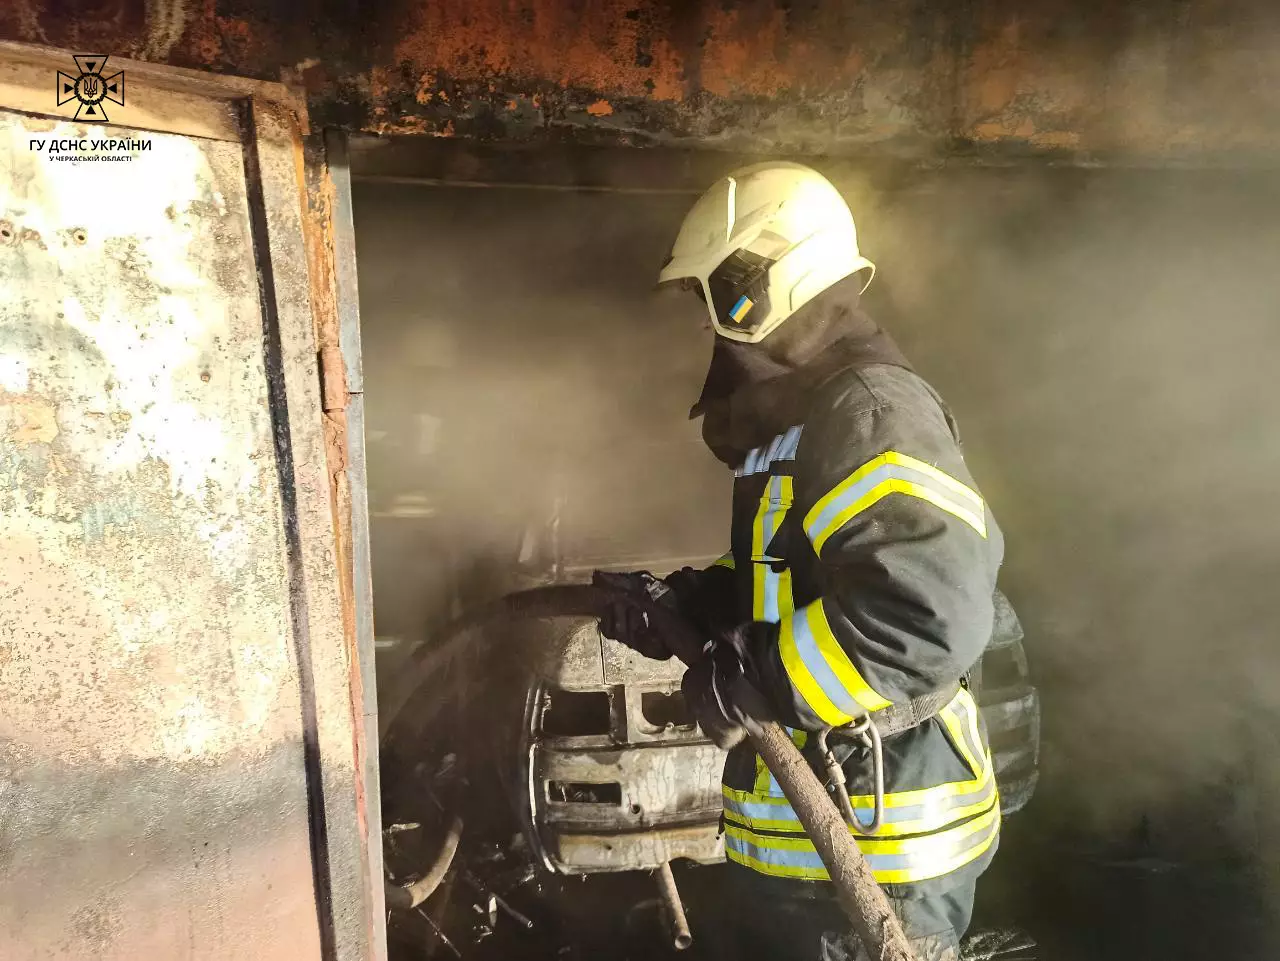 Рятувальники загасили пожежу автомобіля в Каневі